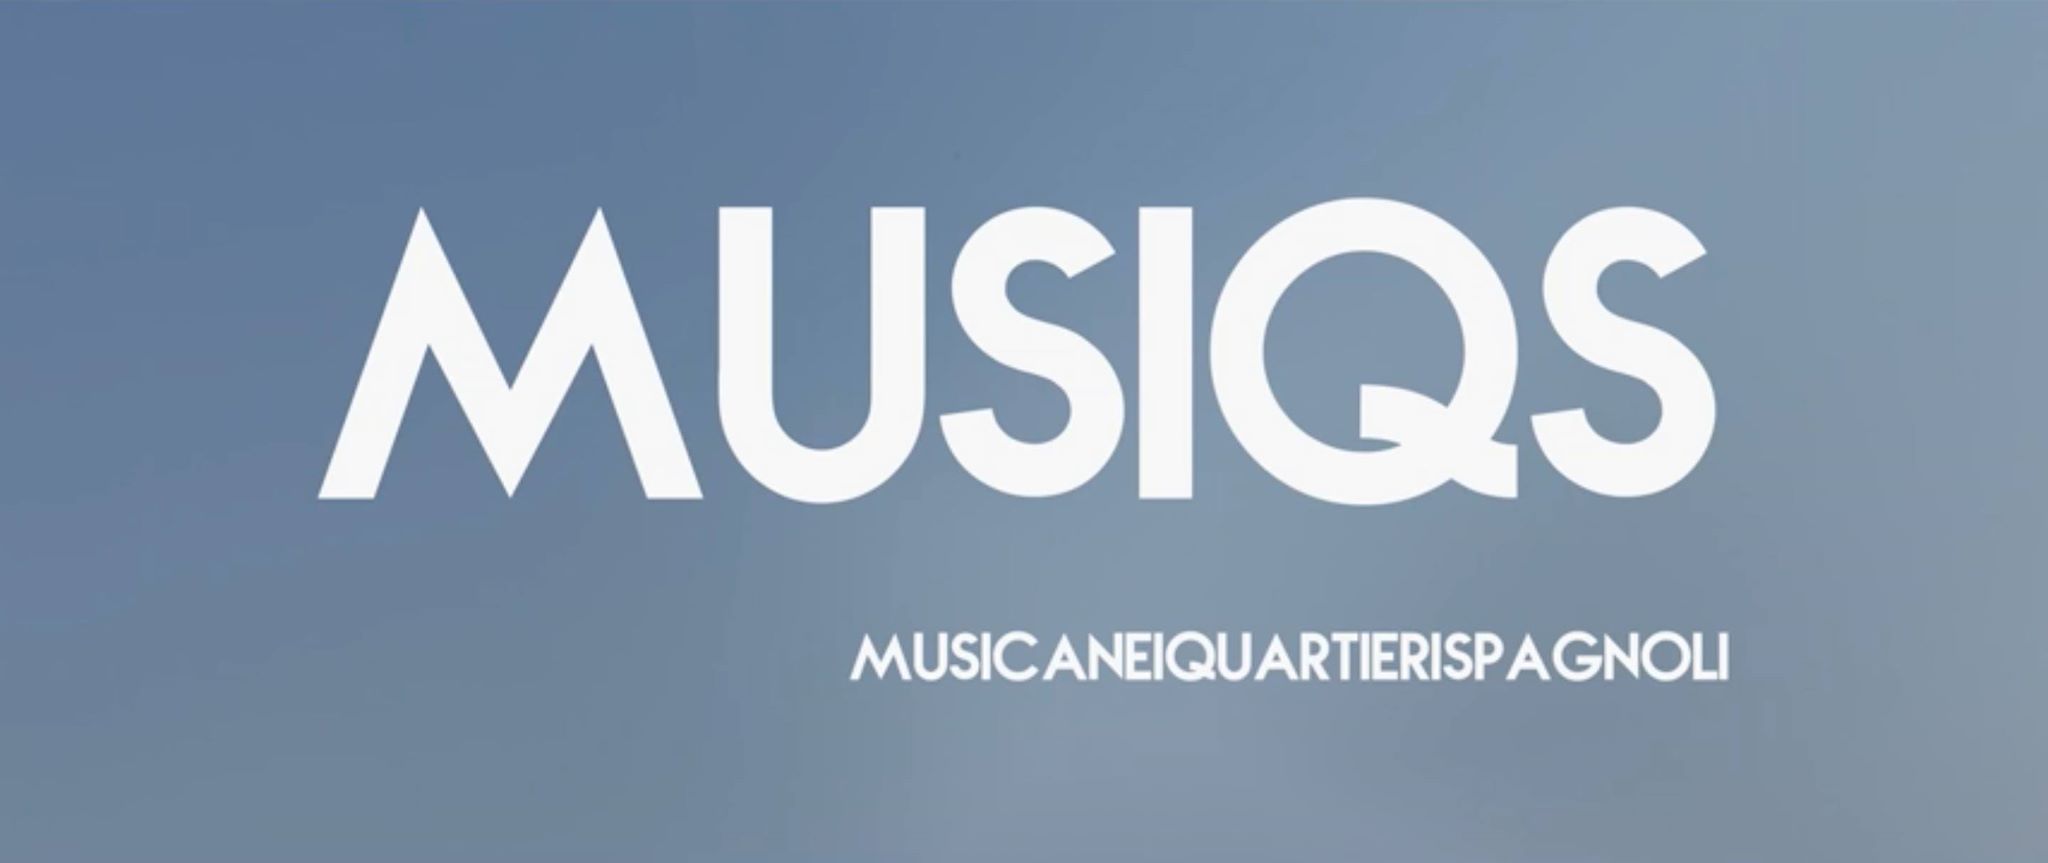 Napoli: nei Quartieri Spagnoli la passione per la musica da vita a “Musiqs”